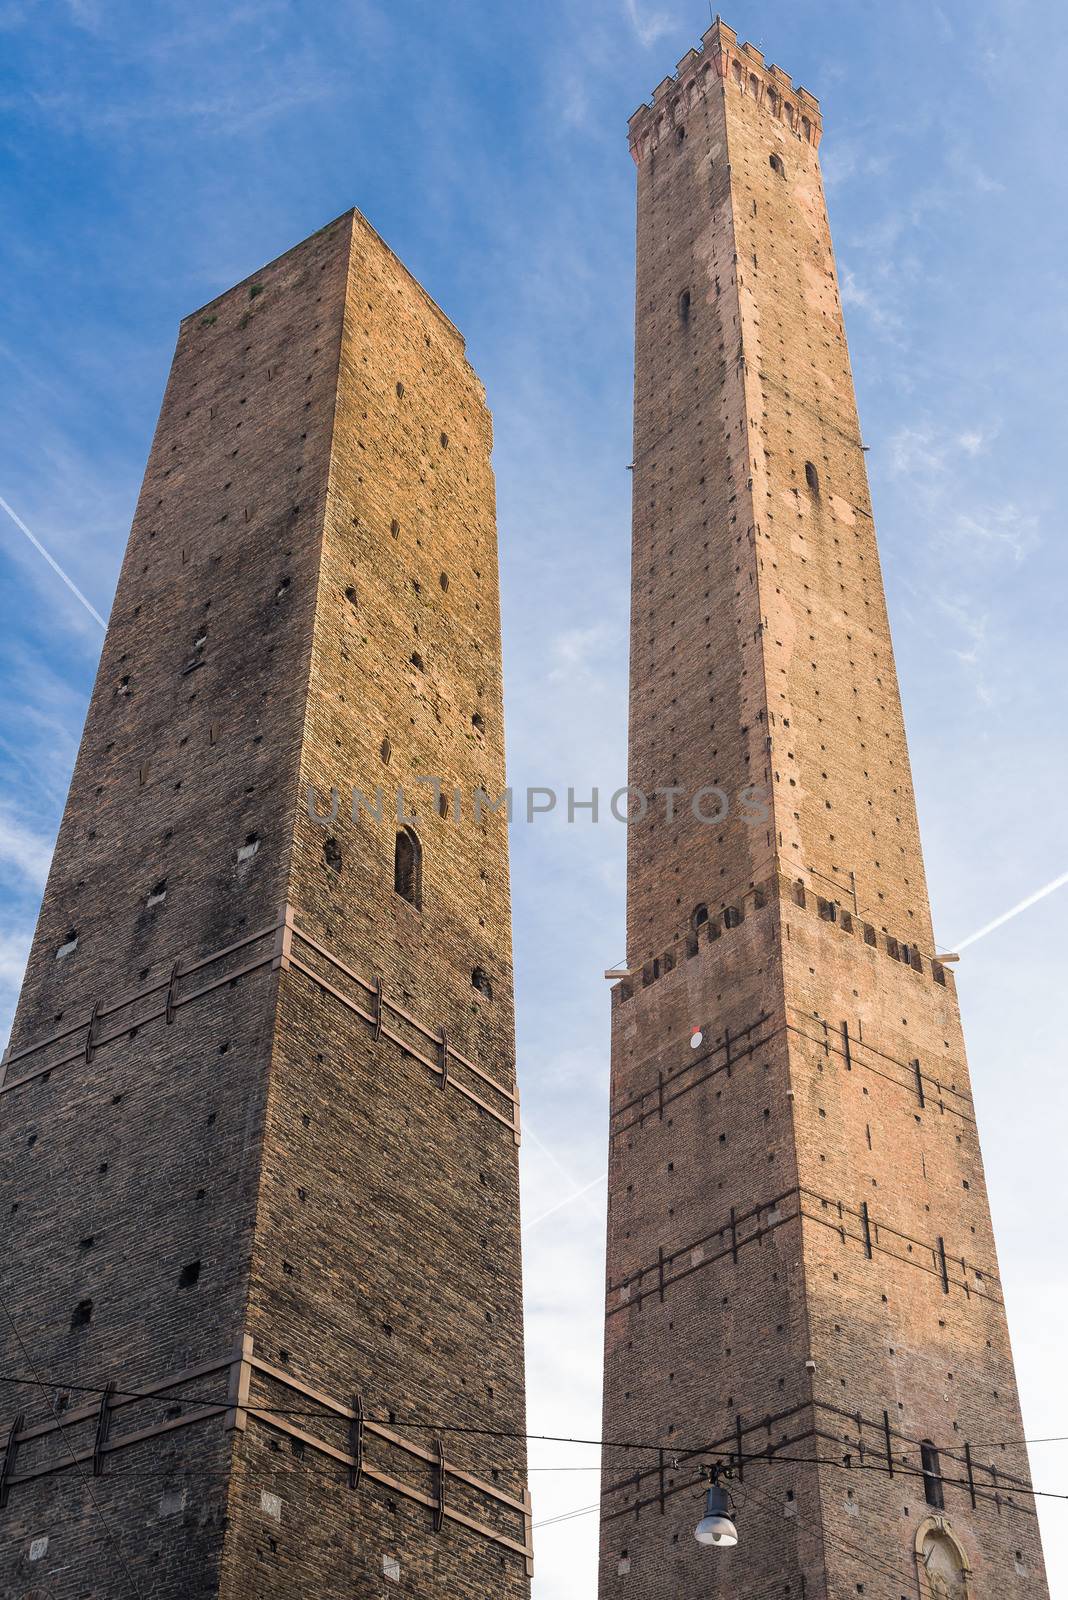 Torre degli Asinelli,e Torre della Garisenda, the two towers, symbol of Bologna